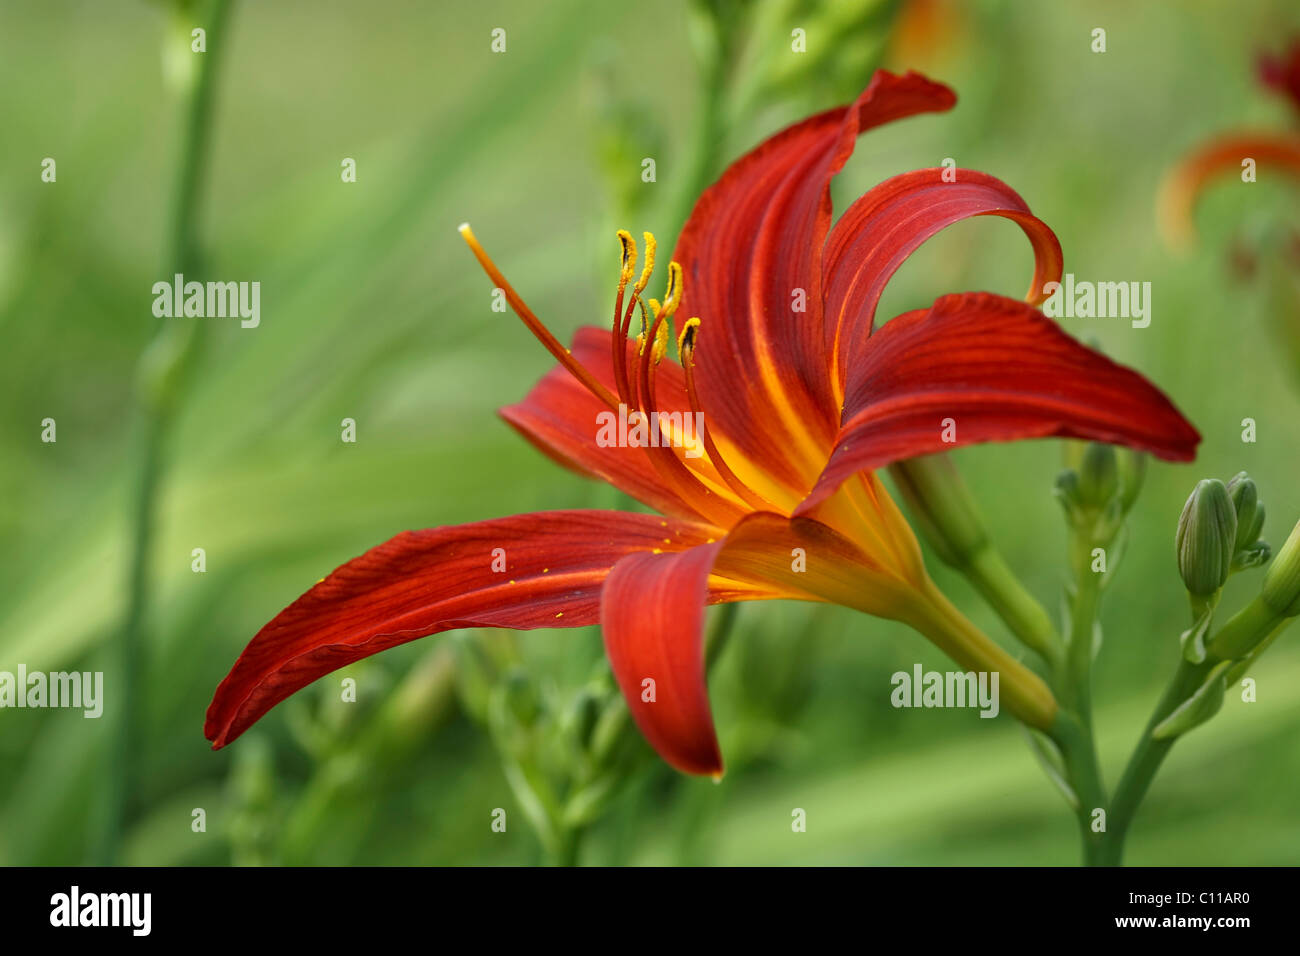 Open flower of a Daylily (Hemerocallis) Stock Photo